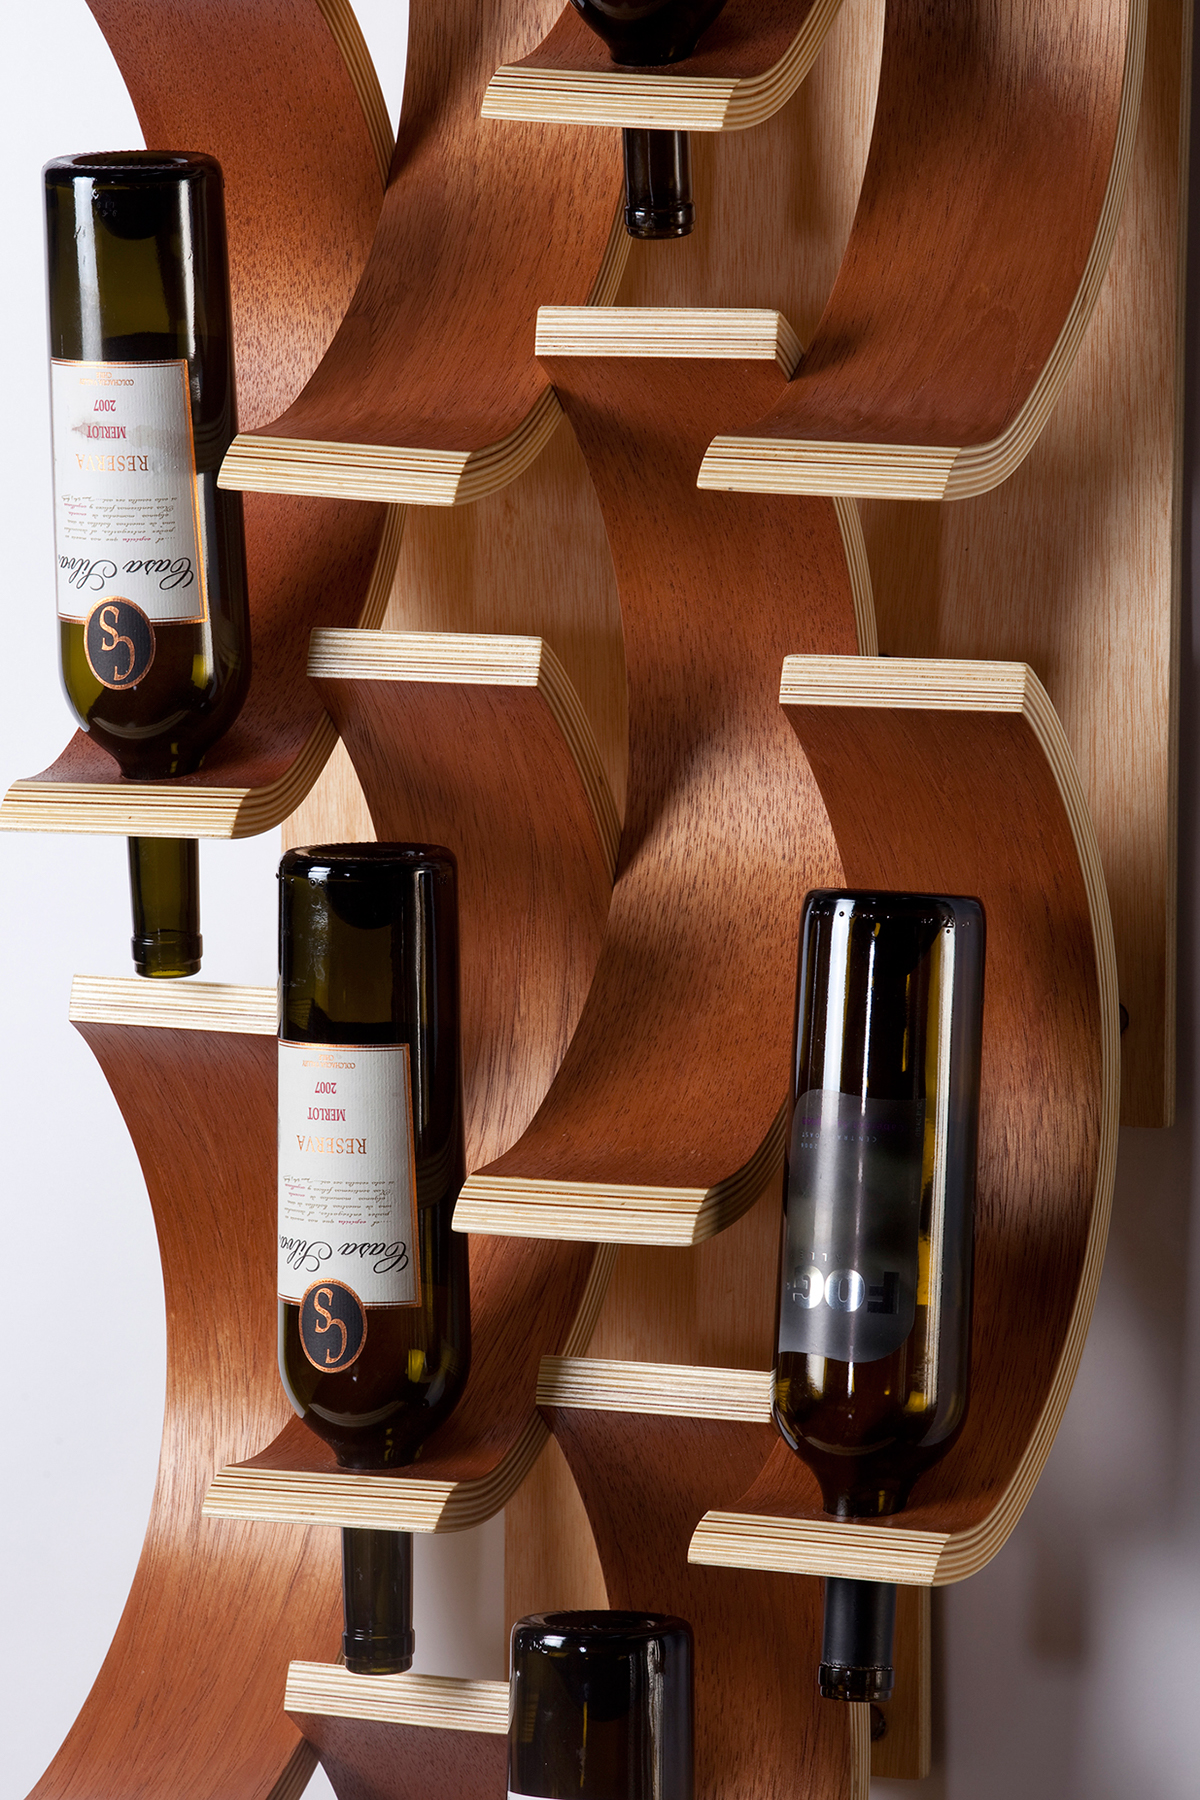 Adobe Portfolio wine wine rack wood bending veneer Cedar bent ply wood woodworking installation sculpture